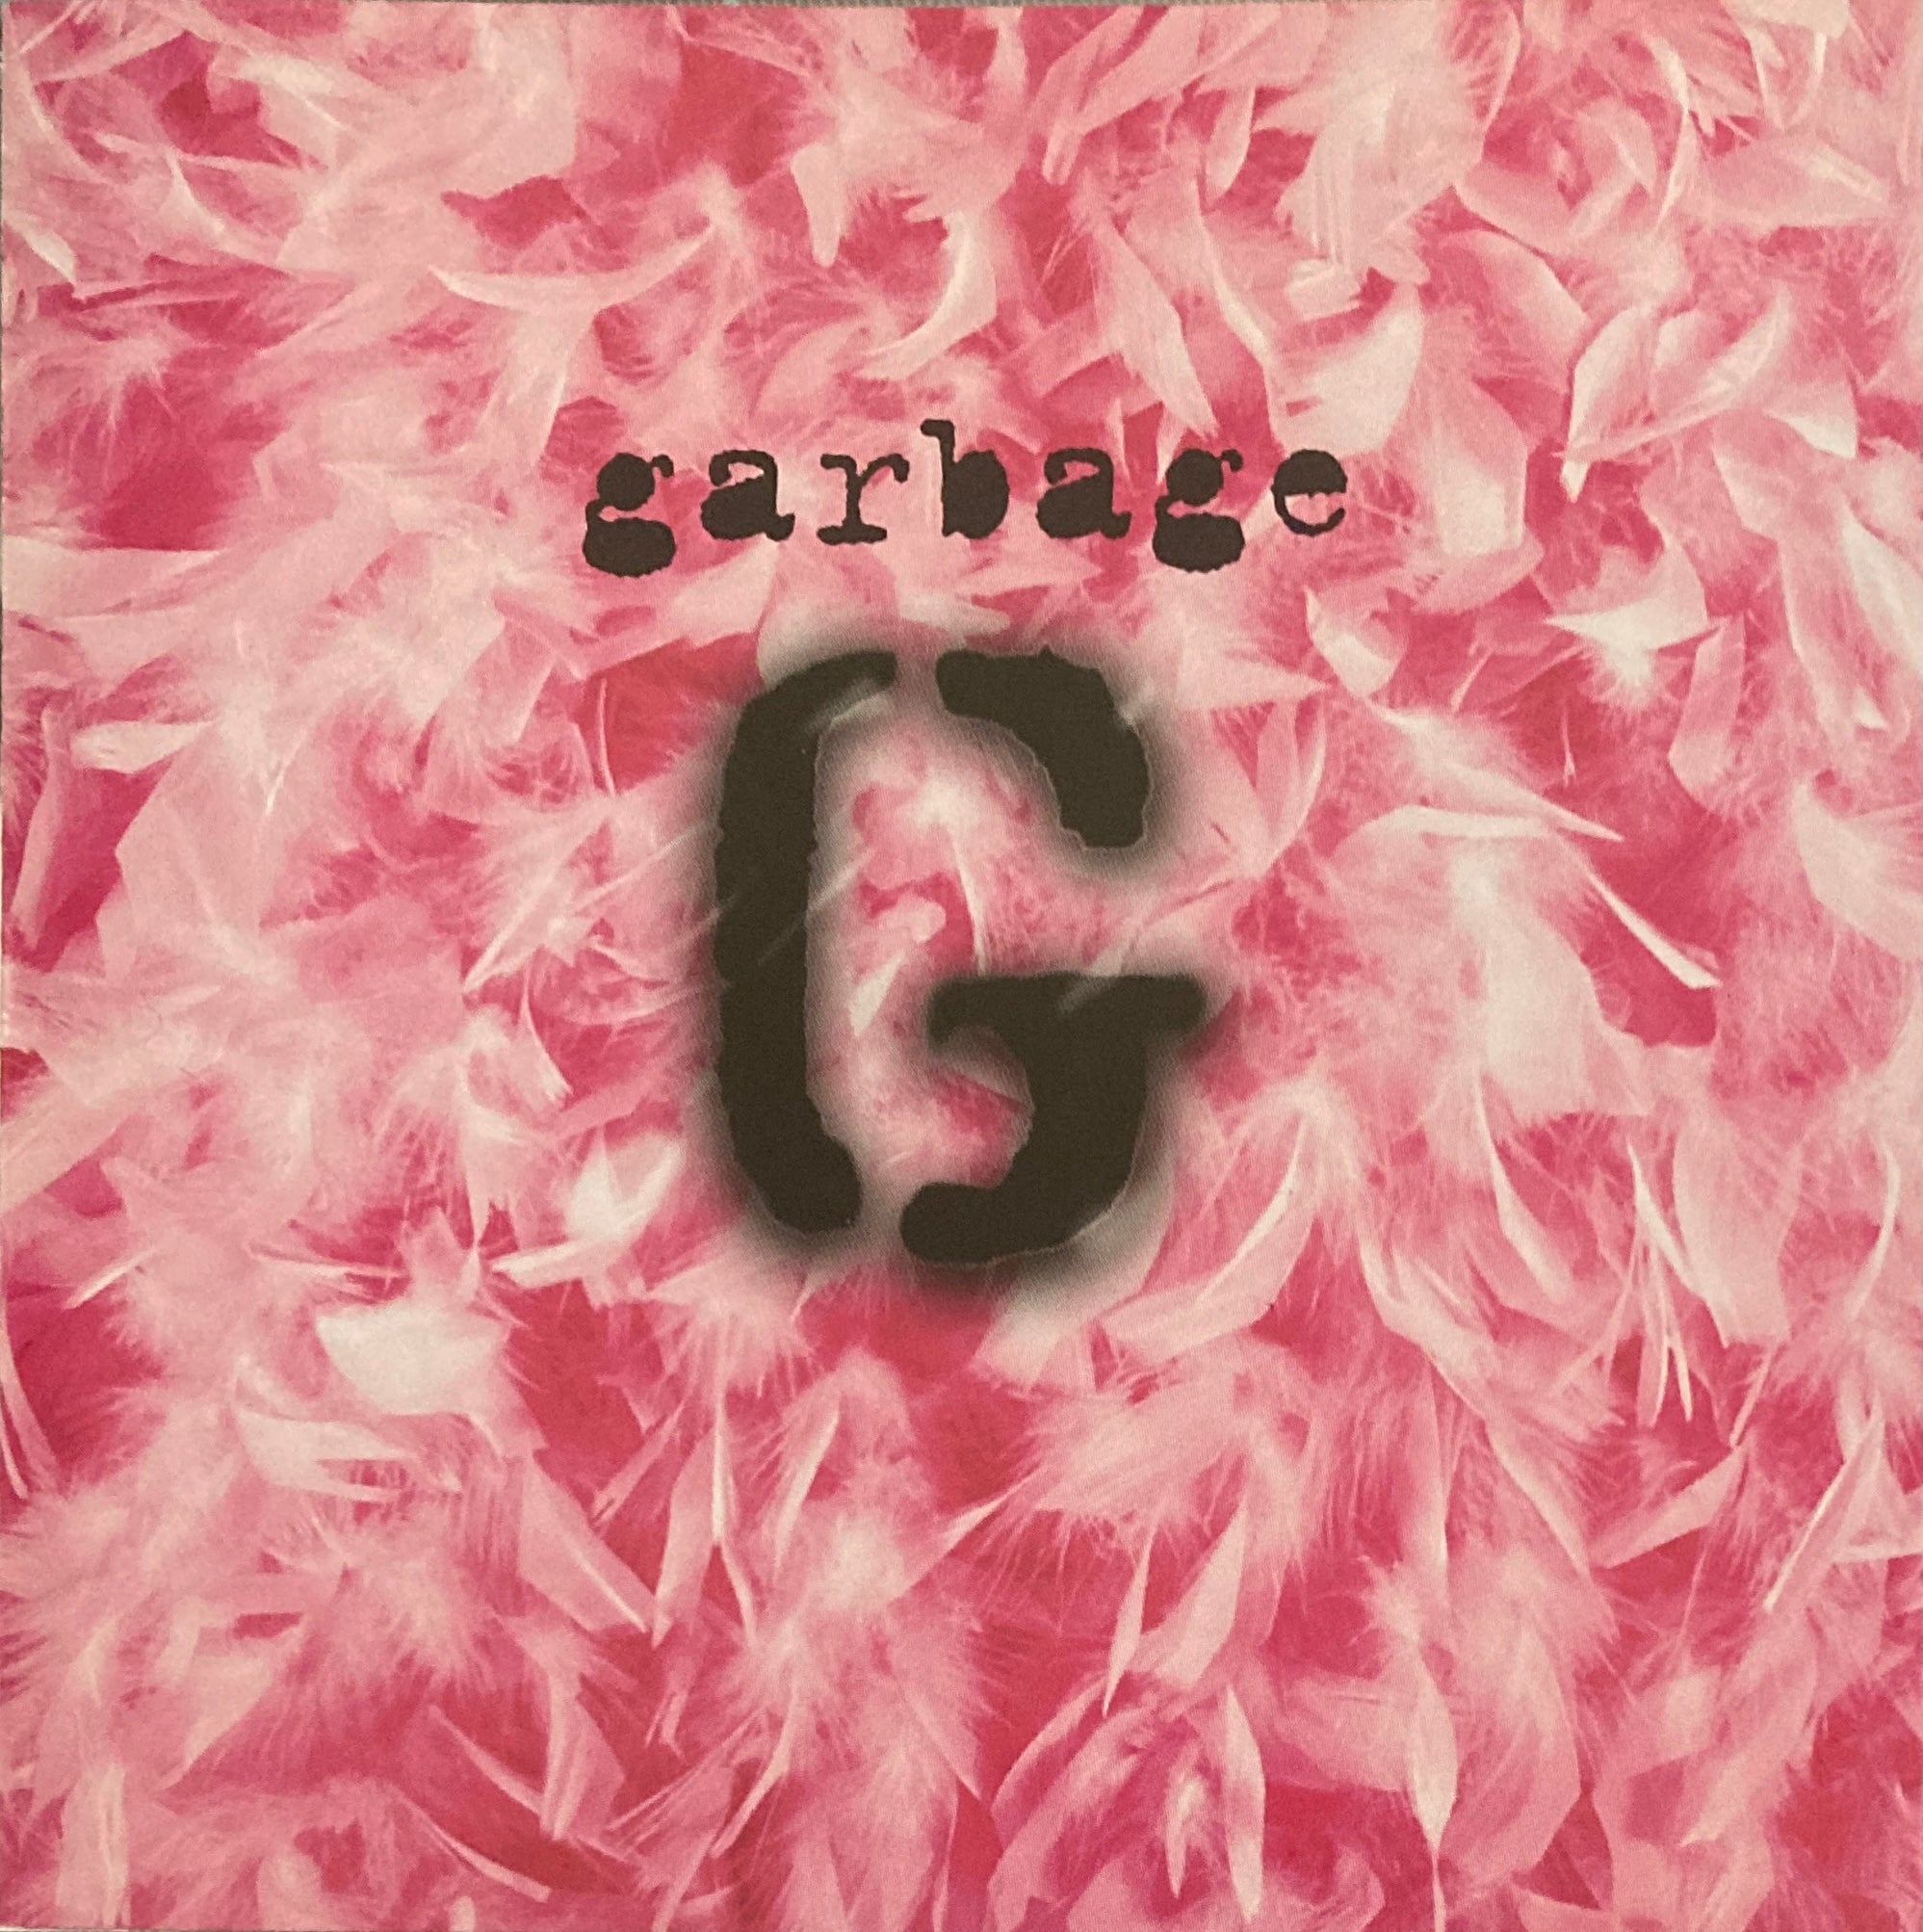 Garbage “Garbage” CD (1995)